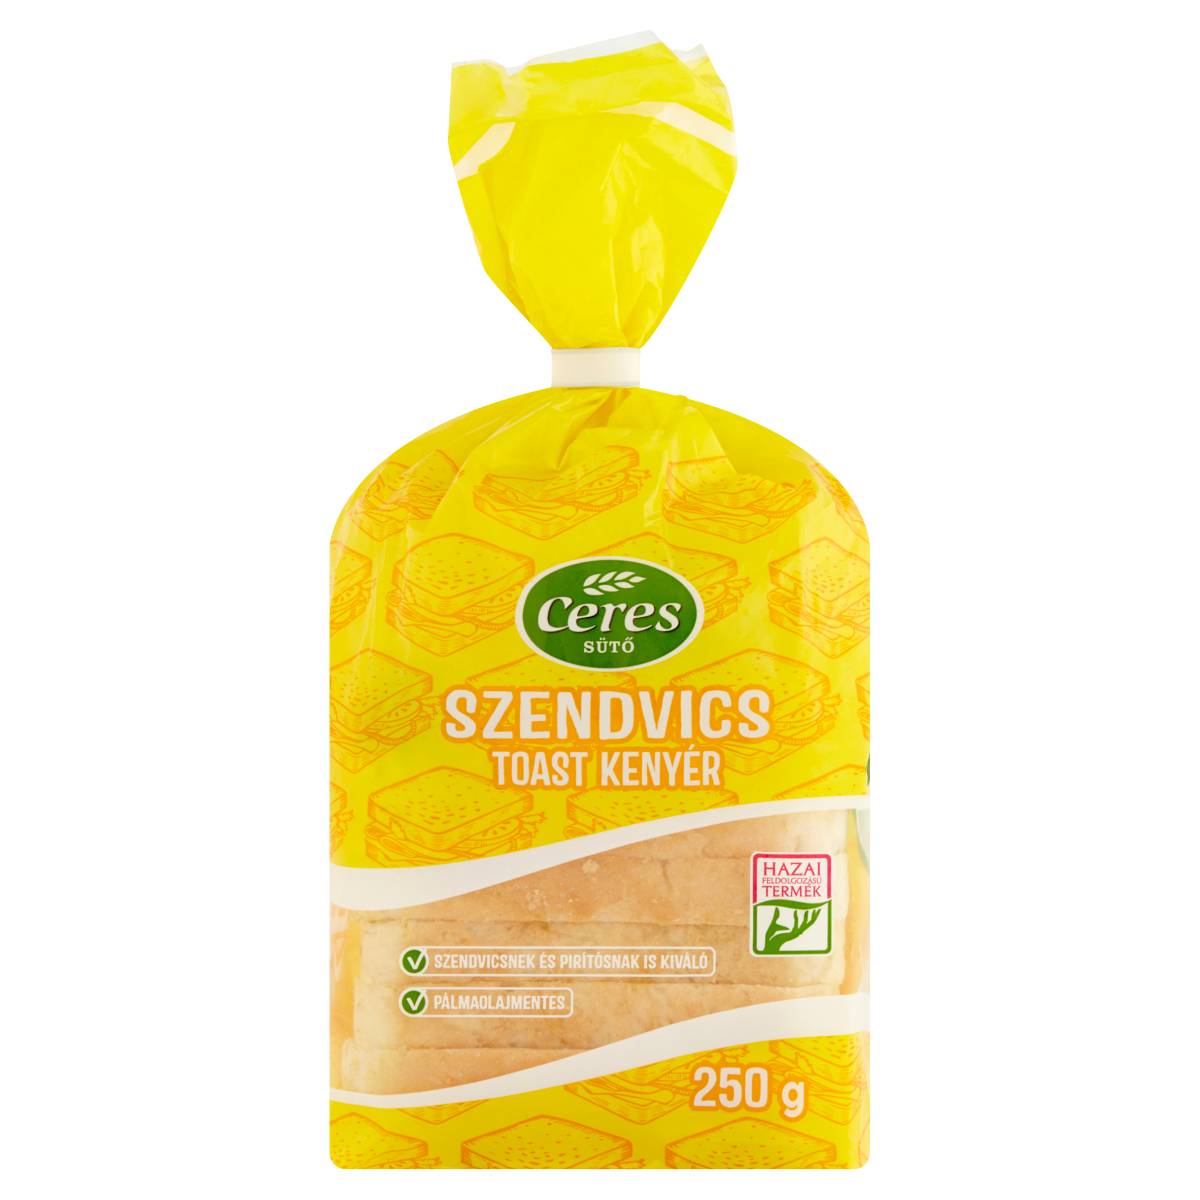 Szendvics toast kenyér 250g